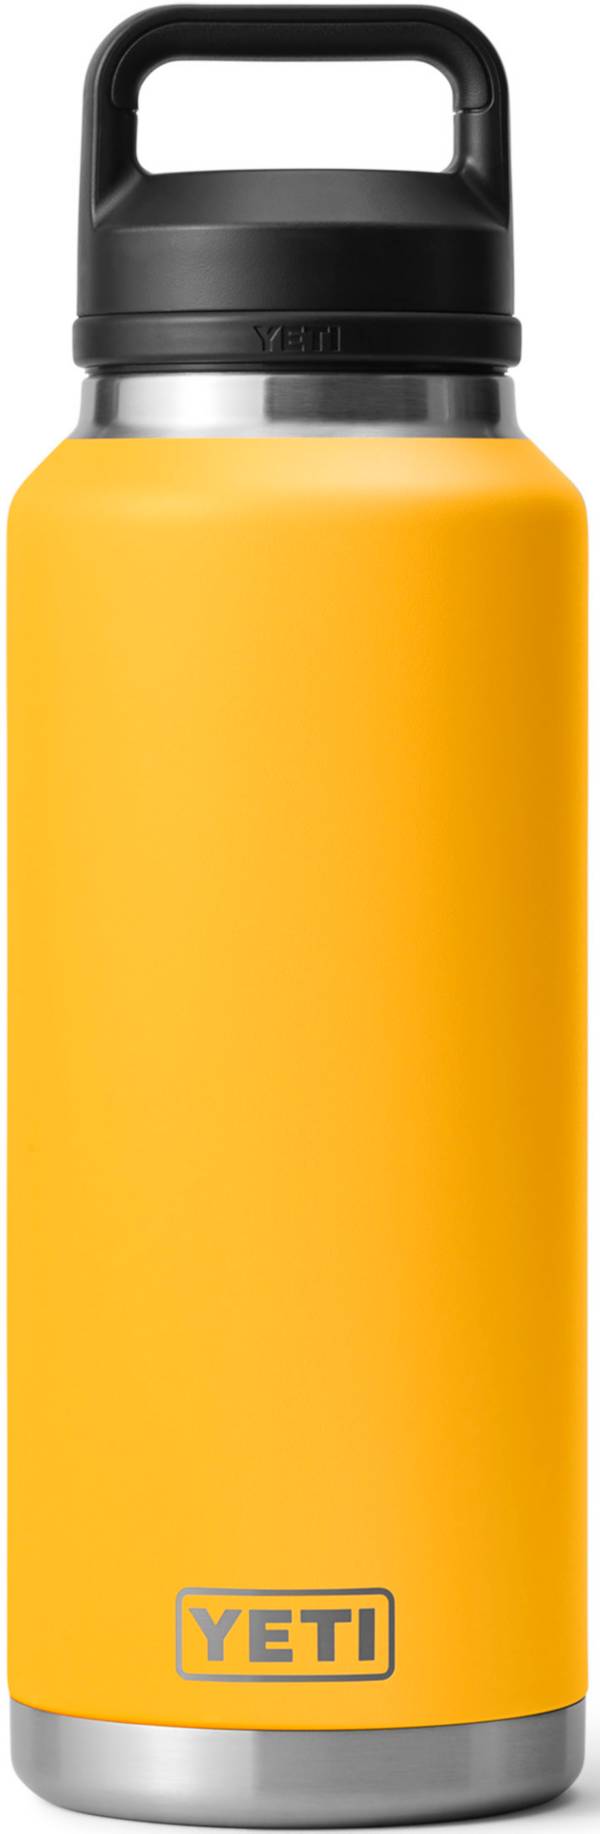 YETI 46 oz. Rambler Bottle with Chug Cap product image